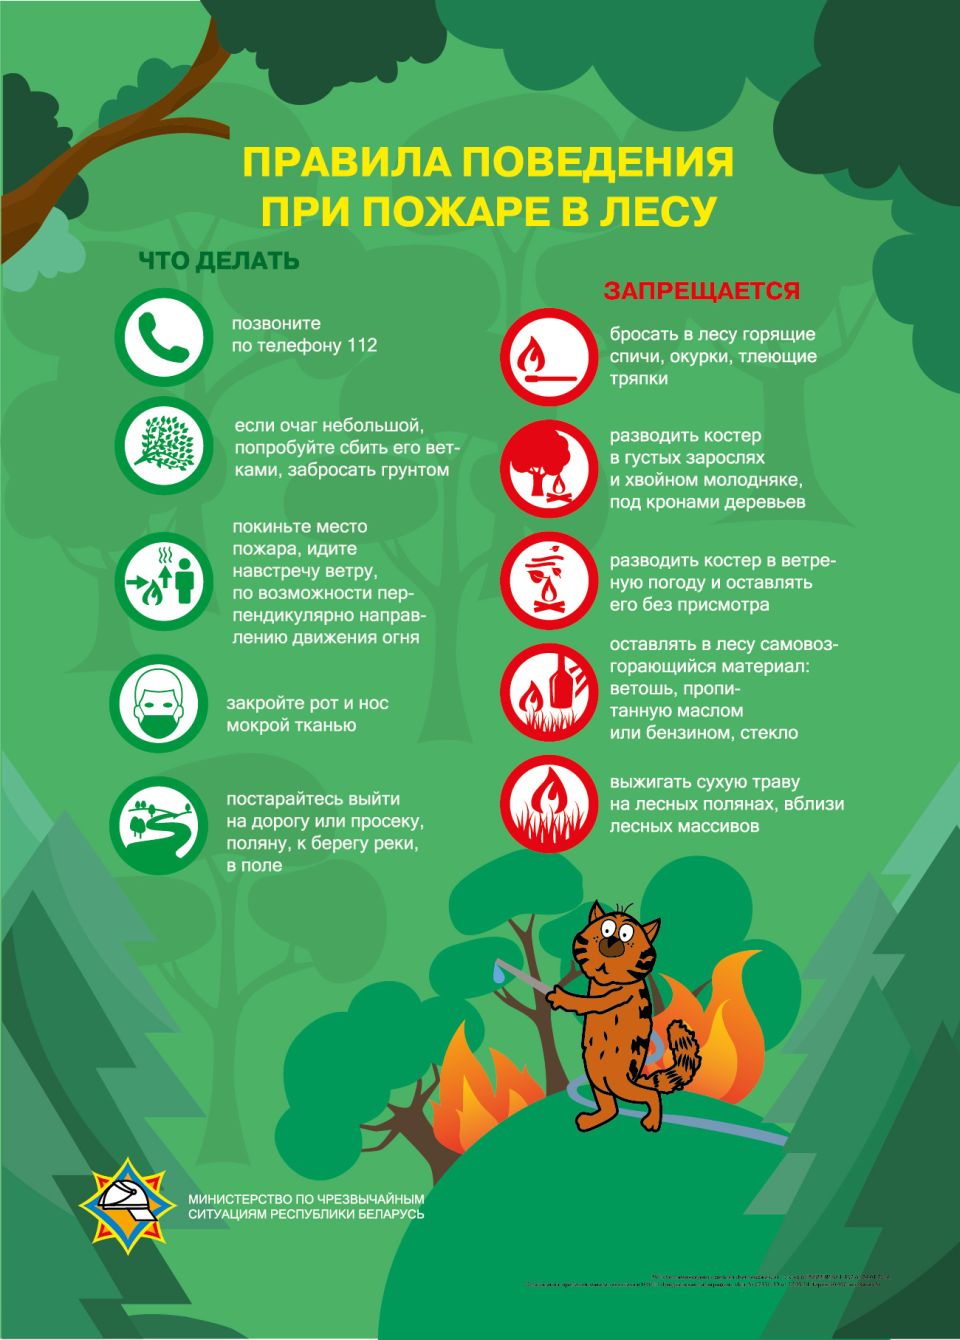 Соблюдайте меры пожарной безопасности при посещении лесных массивов